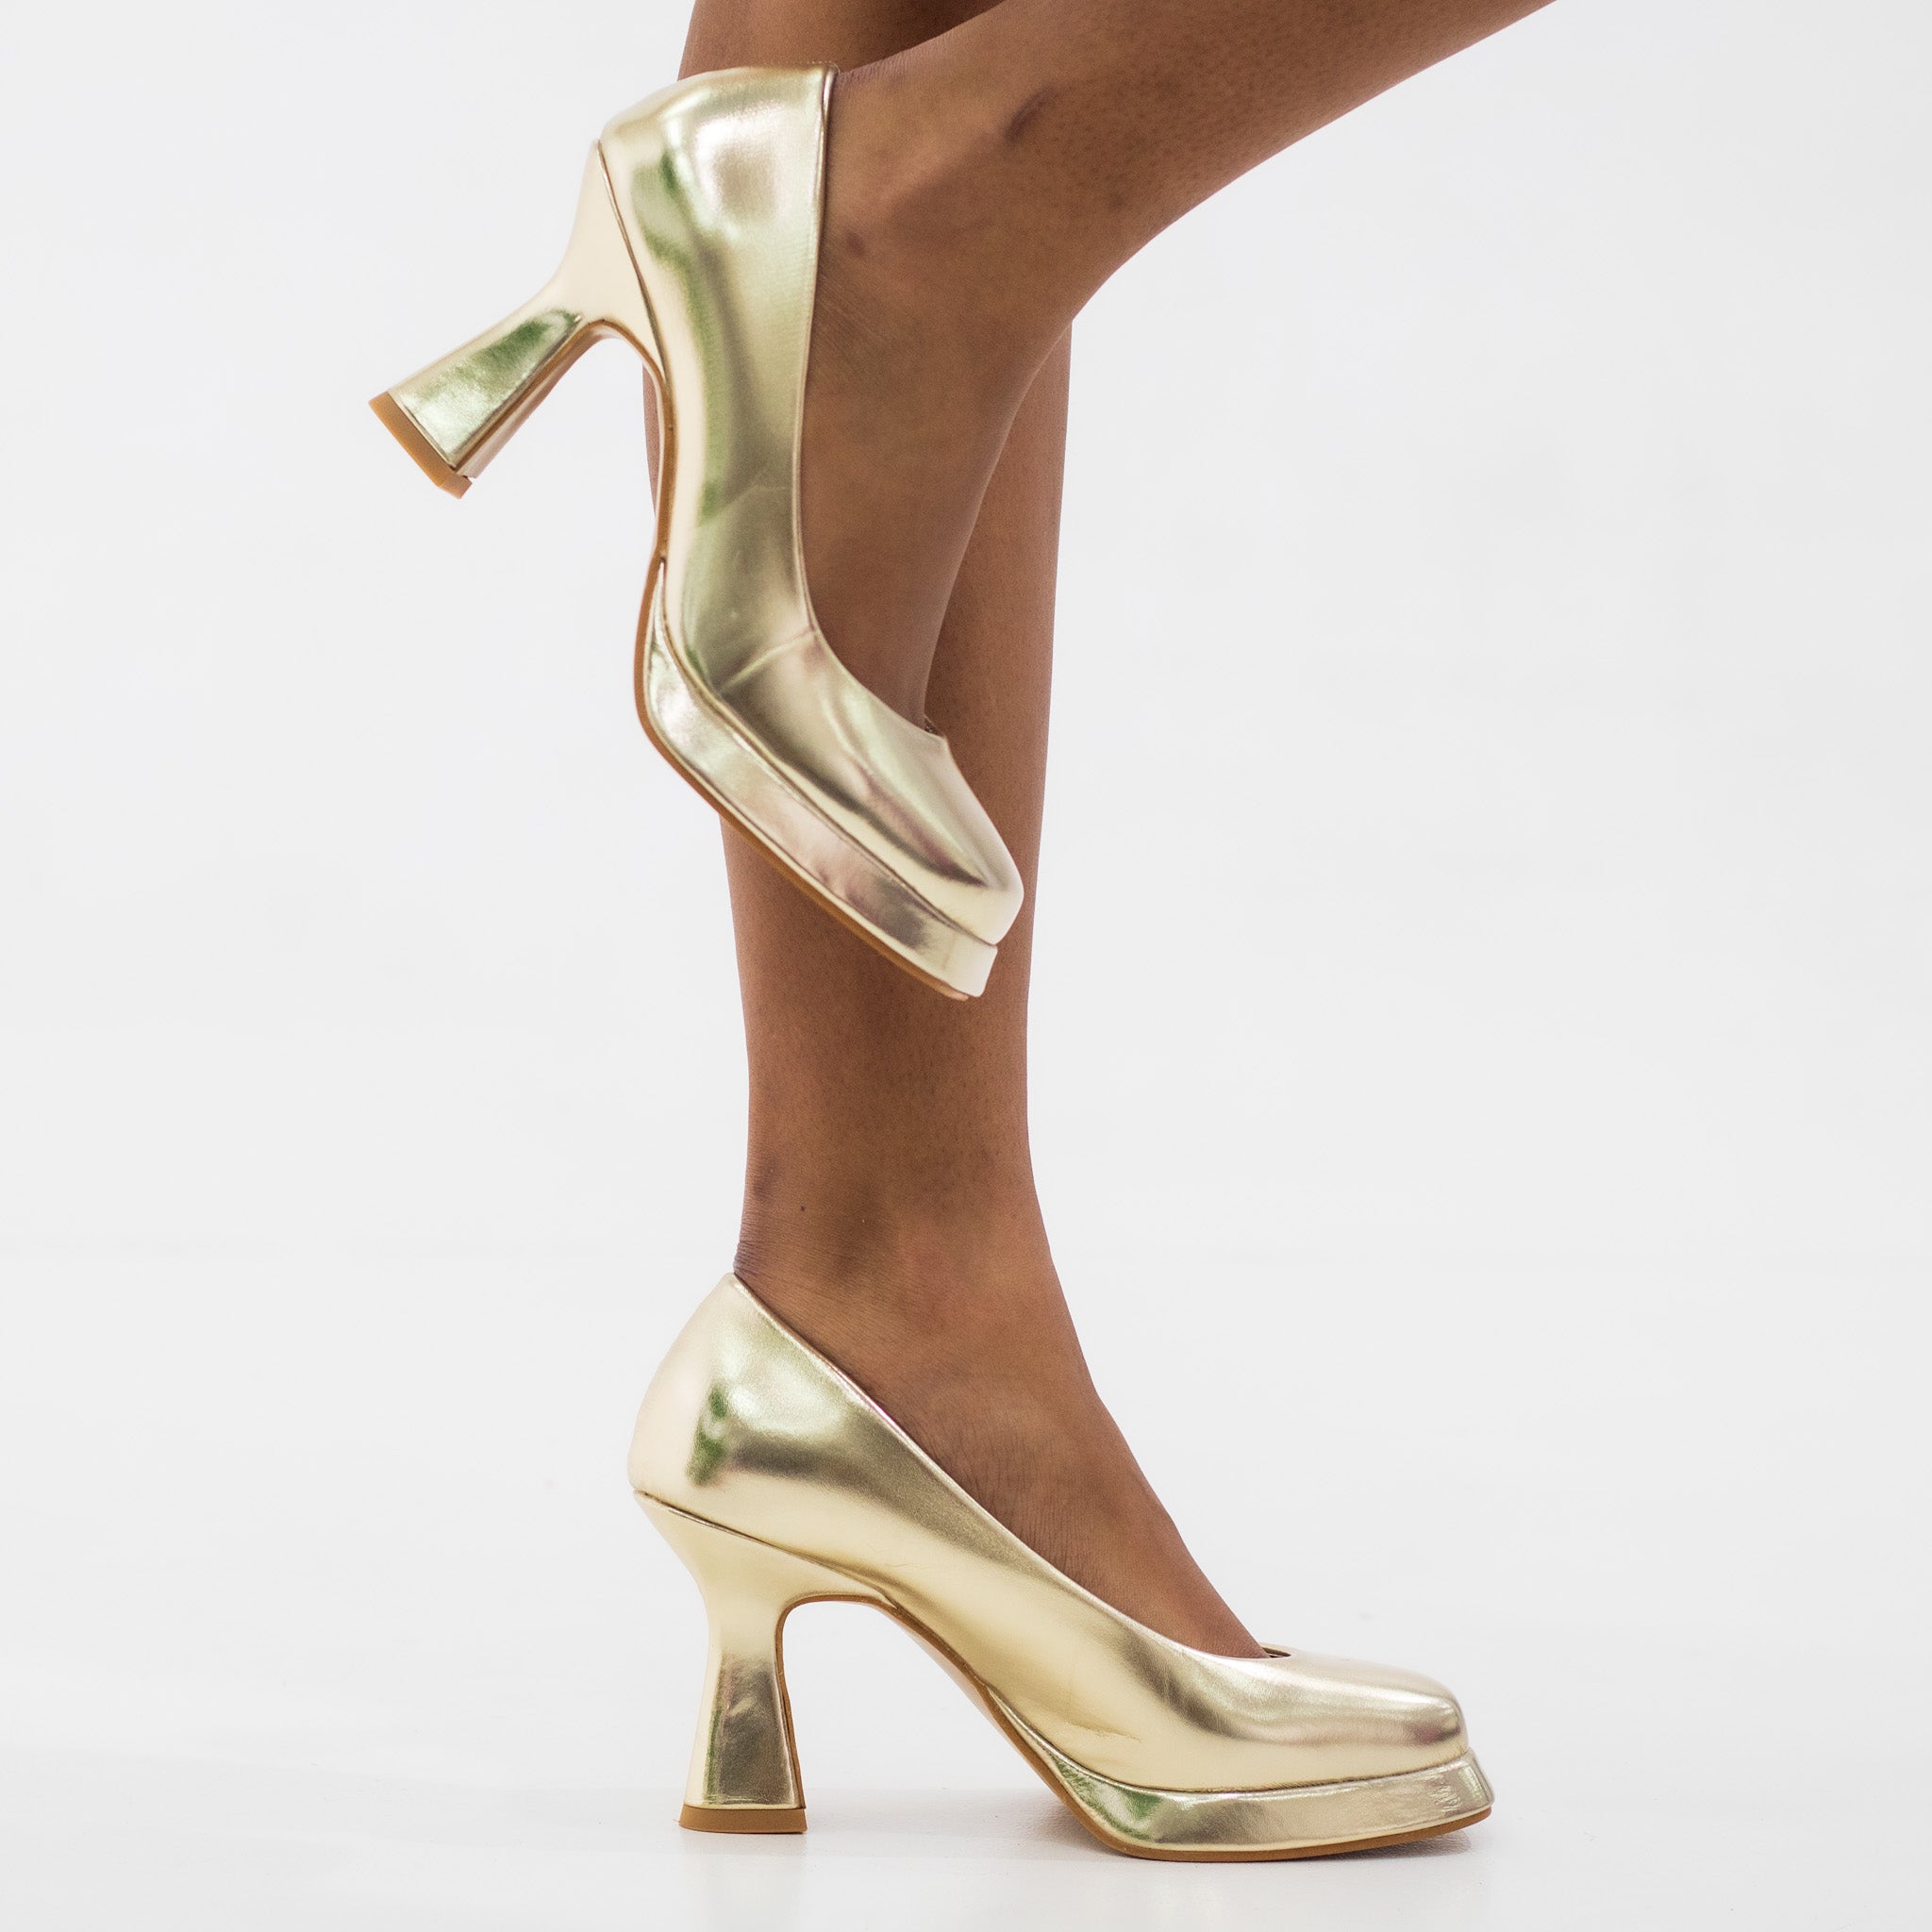 Gold 9cm heel platform court shoe concorde